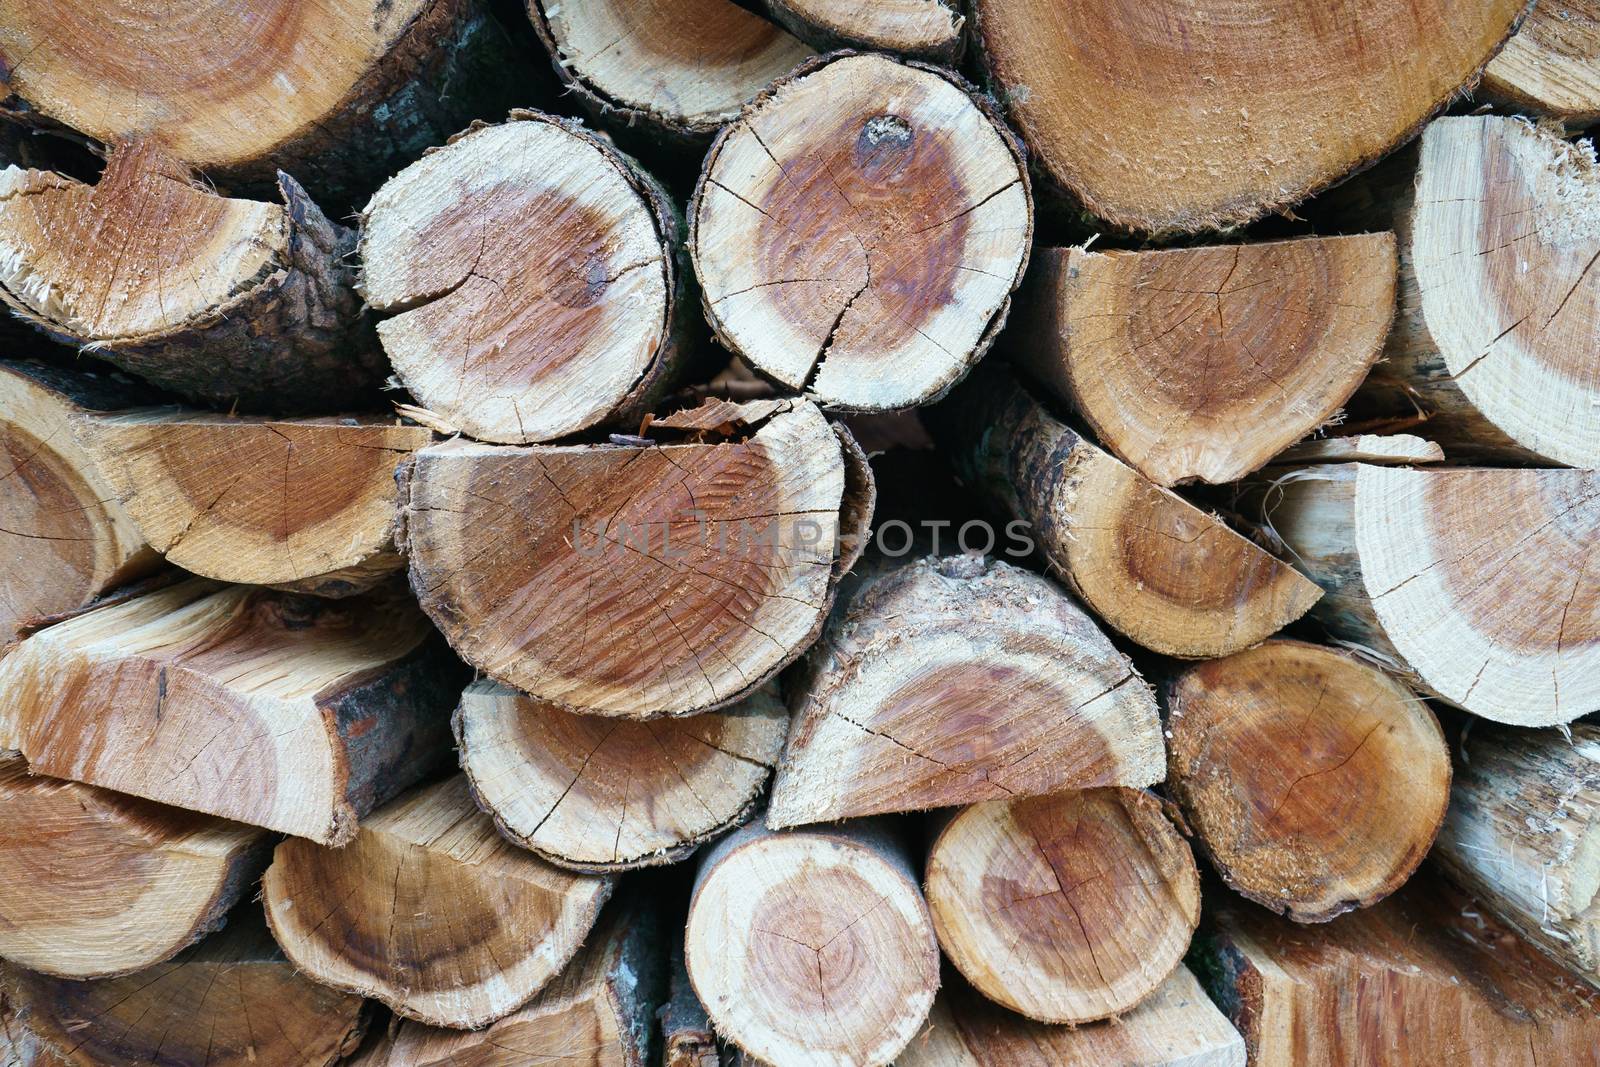 The fresh firewood by yury_kara